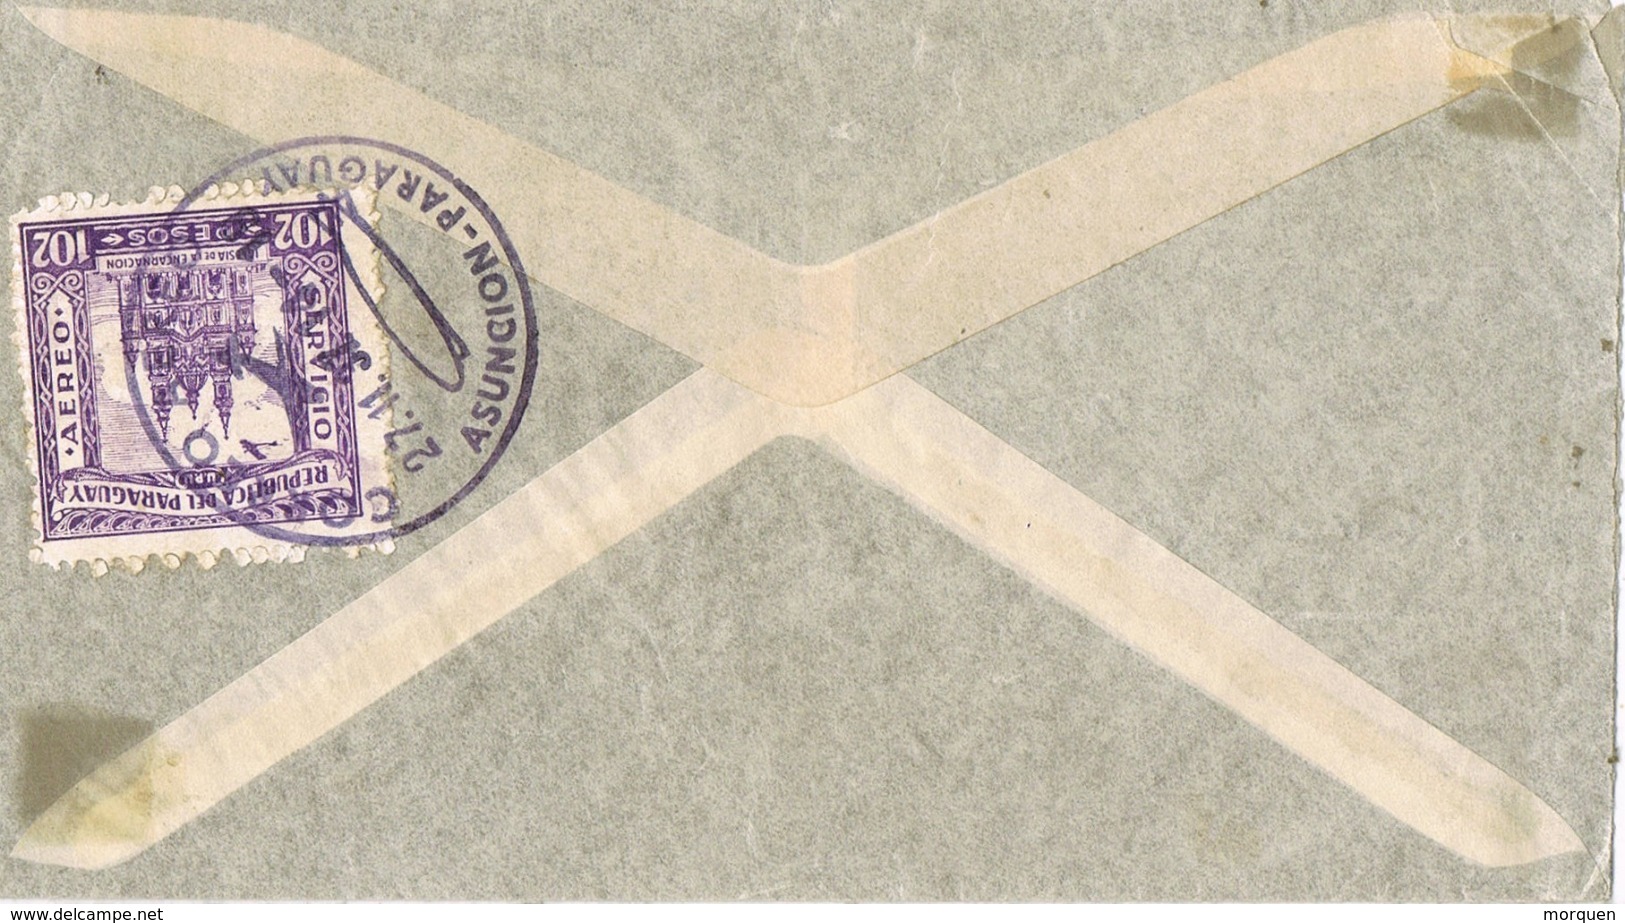 34524. Carta Aerea ASUNCION (Paraguay) 1937. Fechador ZEPPELIN. Stamp Cañonero Armada - Paraguay